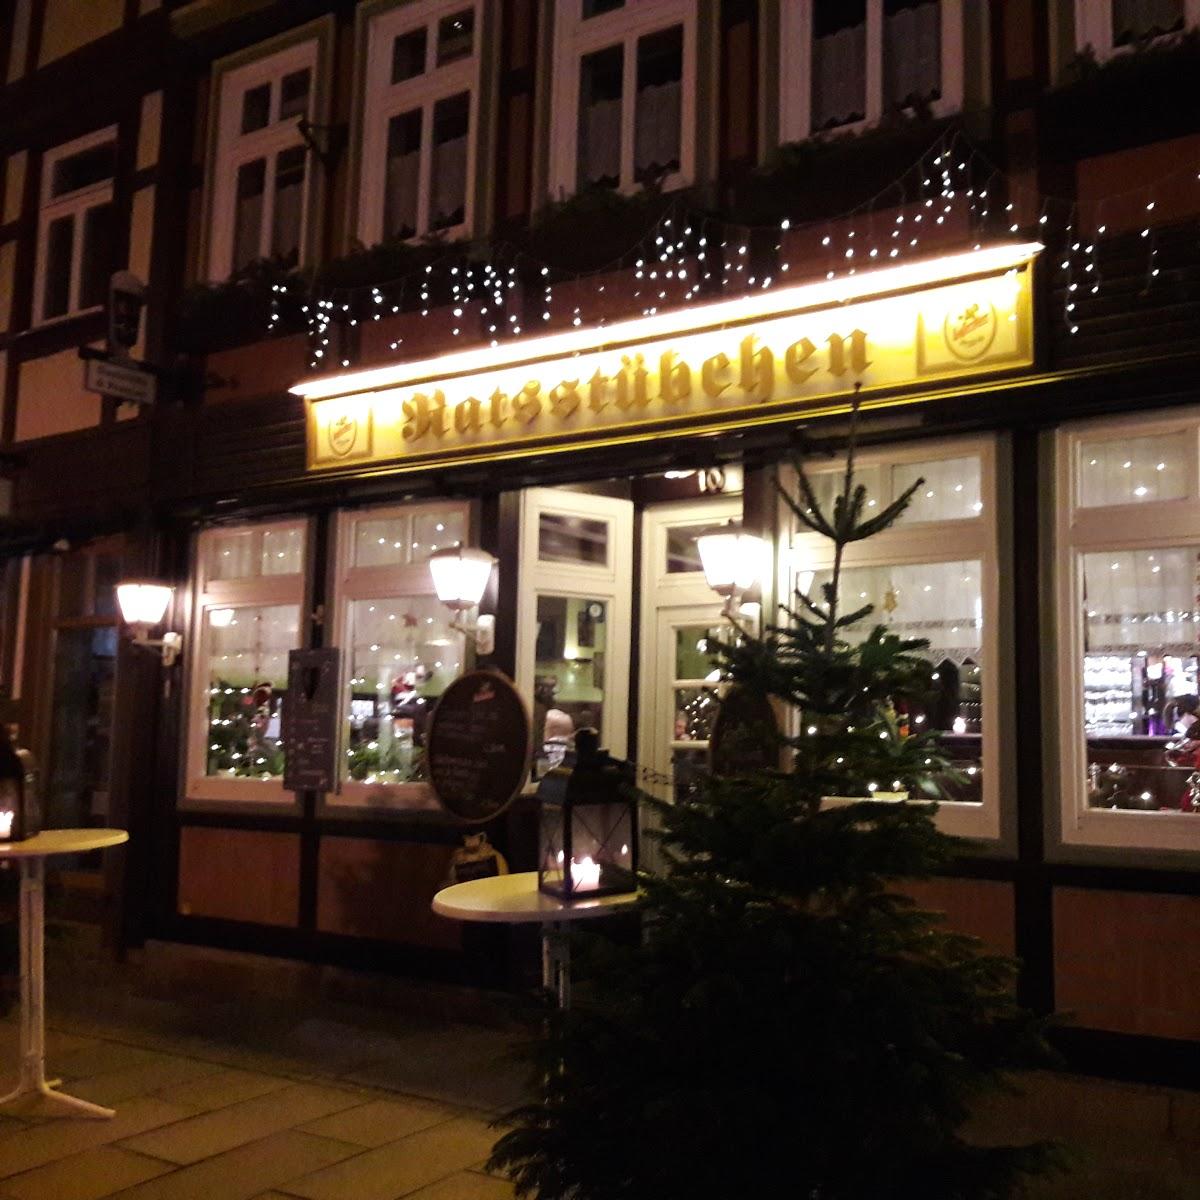 Restaurant "Ratsstübchen" in  Wernigerode